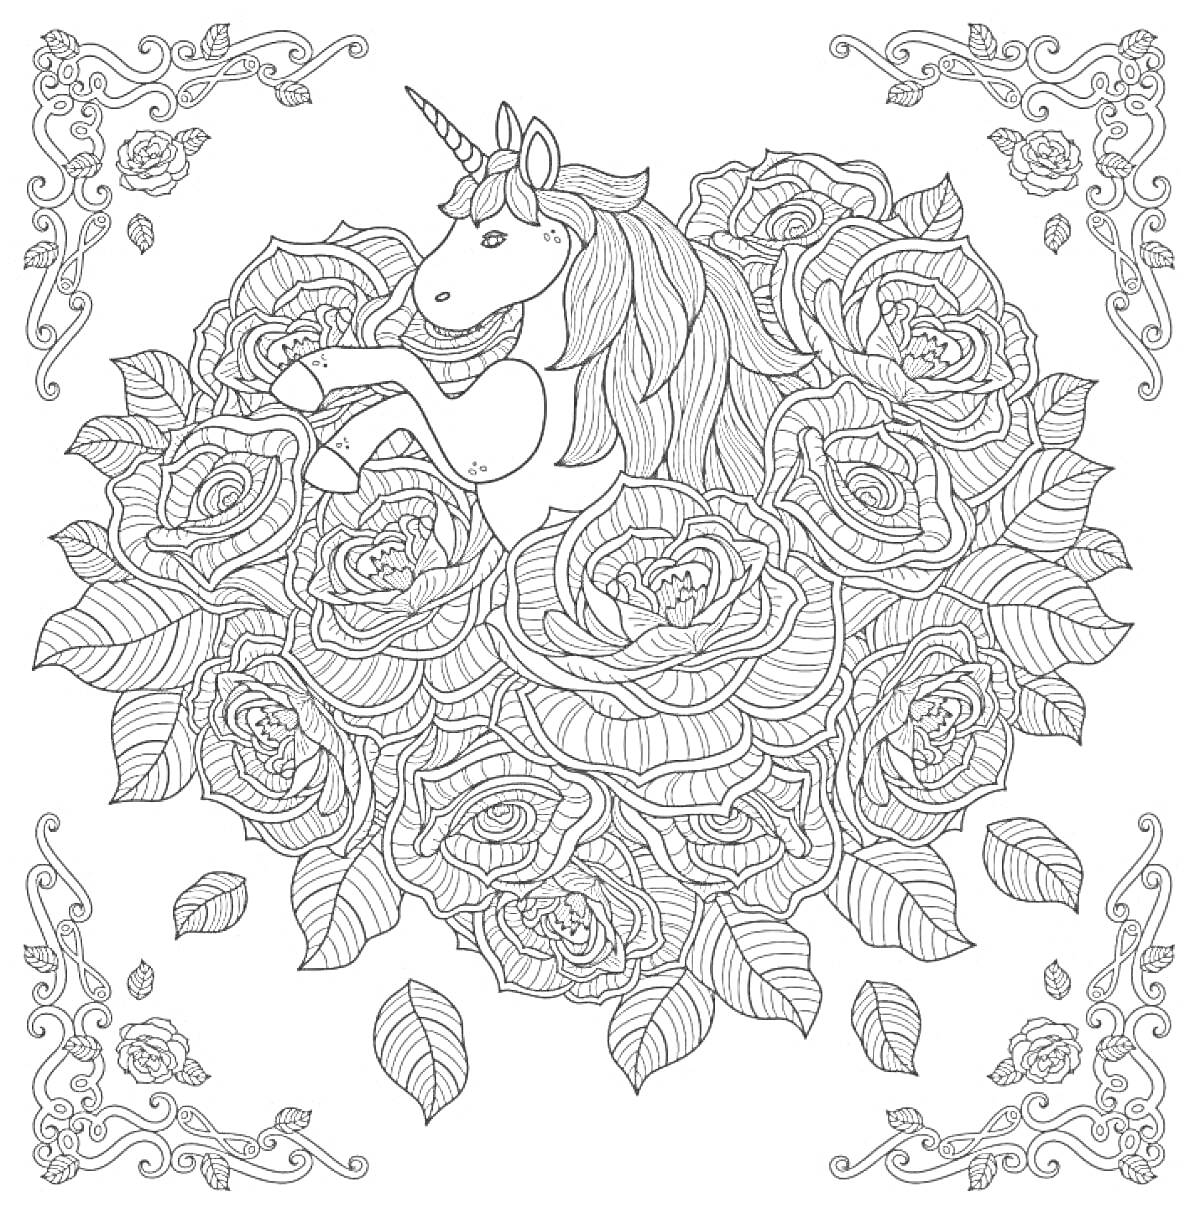 Единорог среди роз в декоративной рамке с цветочными узорами